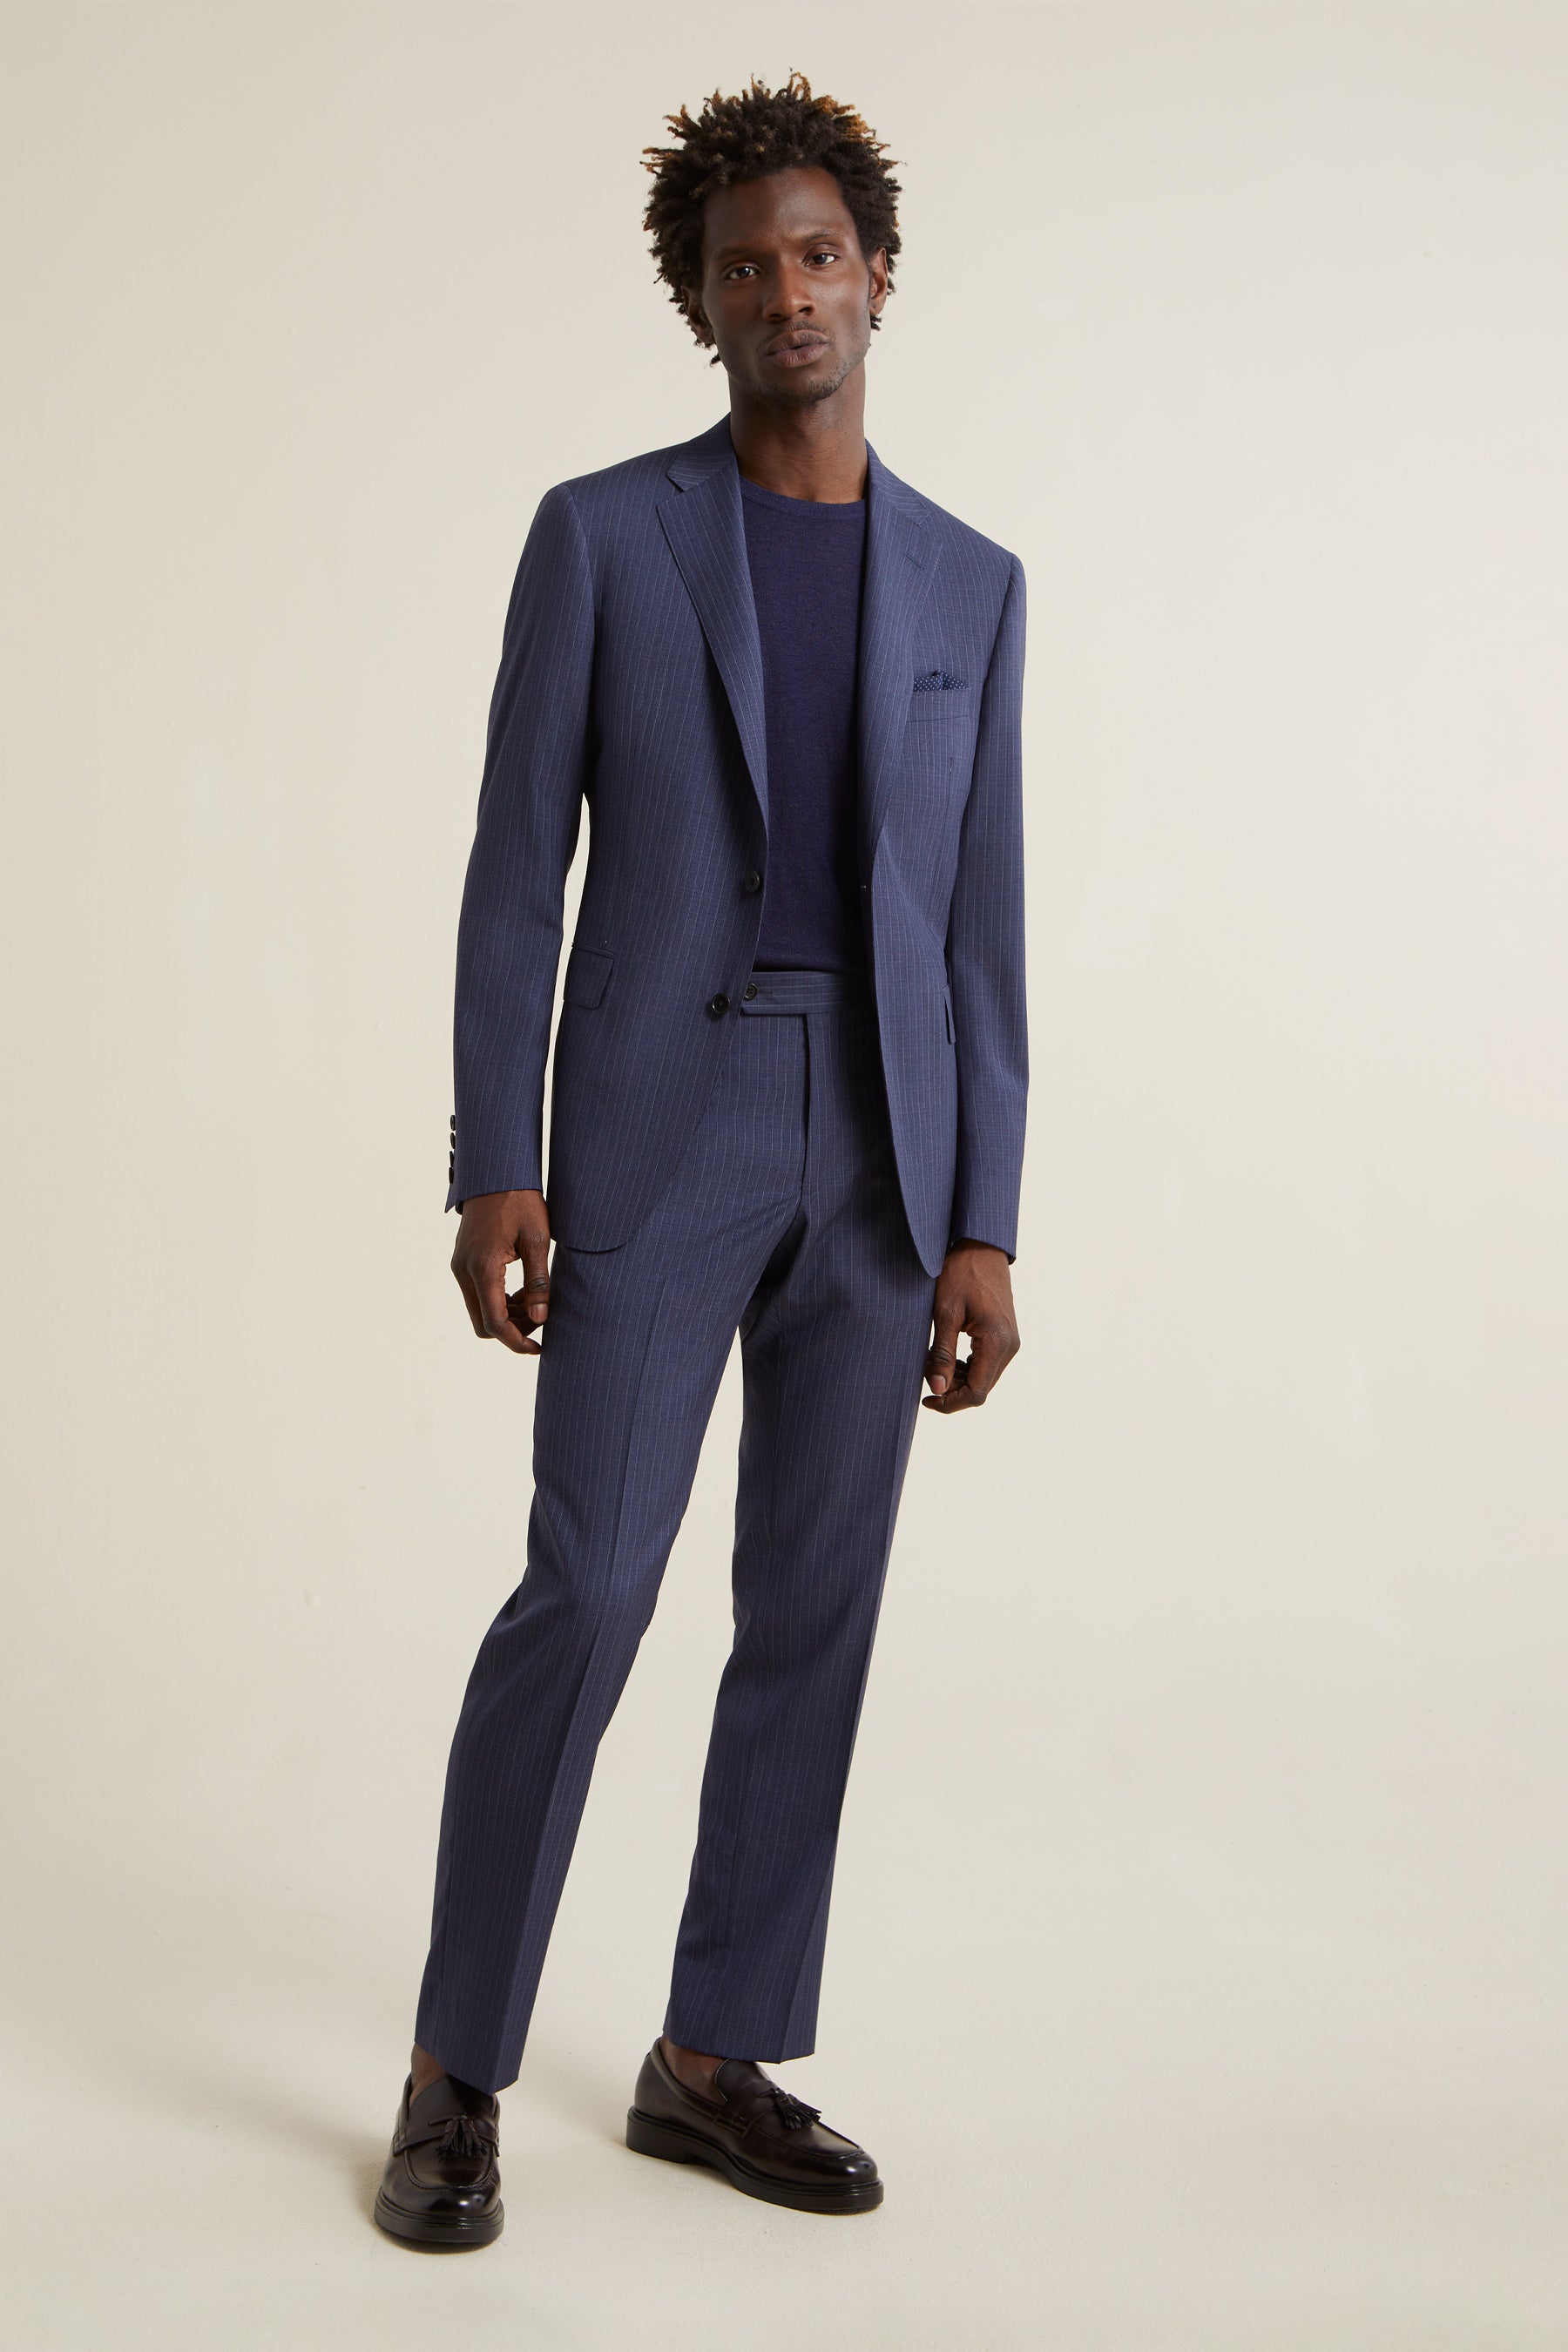 A 3Piece Business Men Navy Blue Stripe Suit Set By Belfor | Thekingsmen